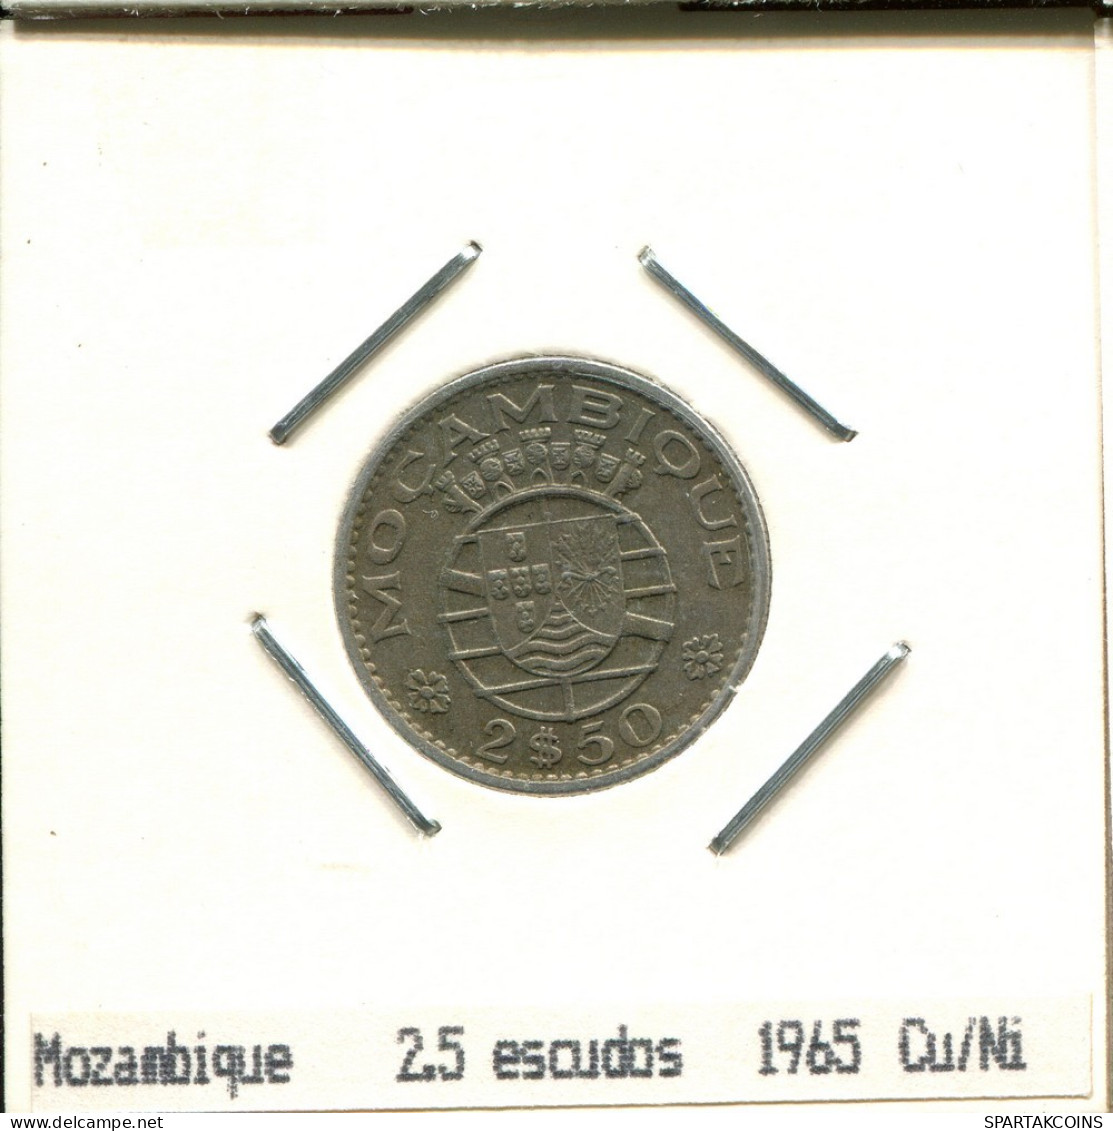 2$50 ESCUDOS 1965 MOZAMBIQUE Coin #AS413.U.A - Mozambico